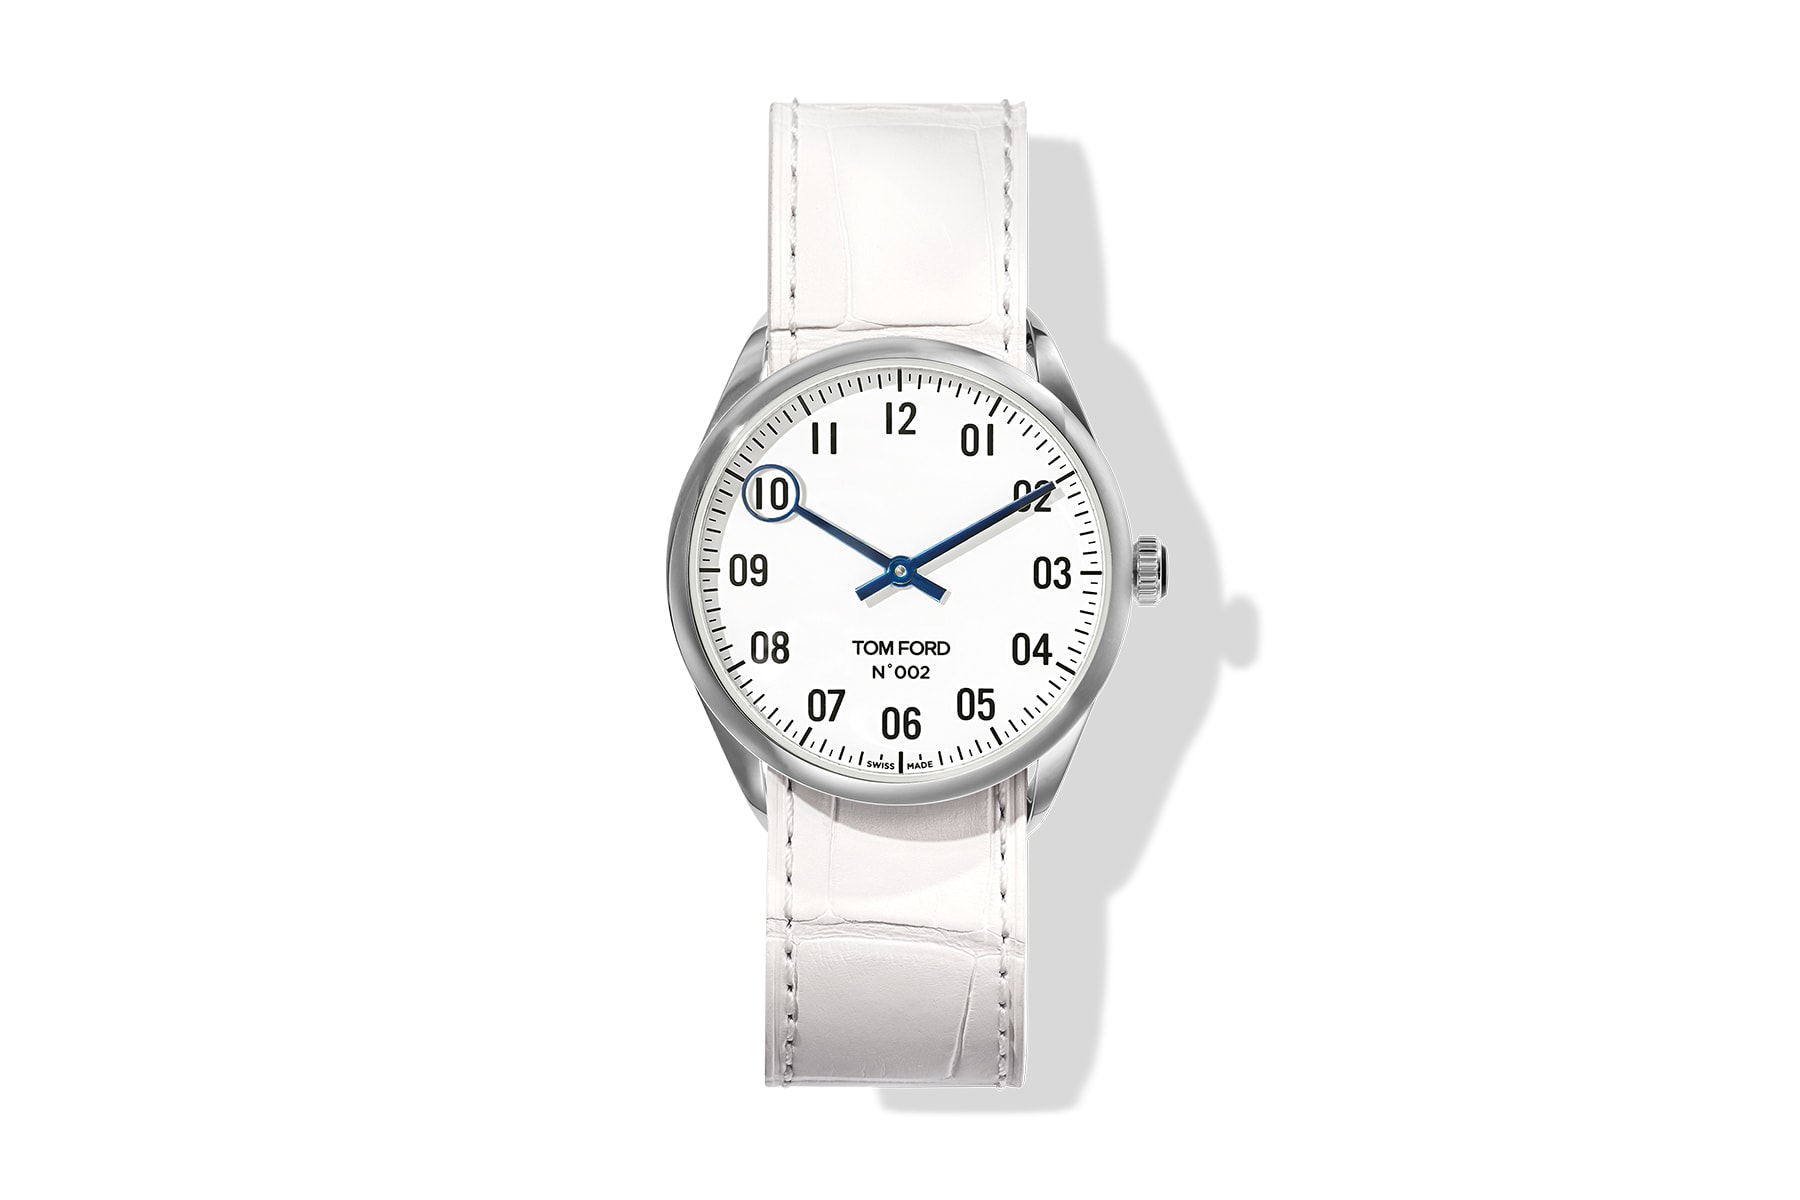 紳士美學之延伸 - TOM FORD 推出全新 002 腕錶系列